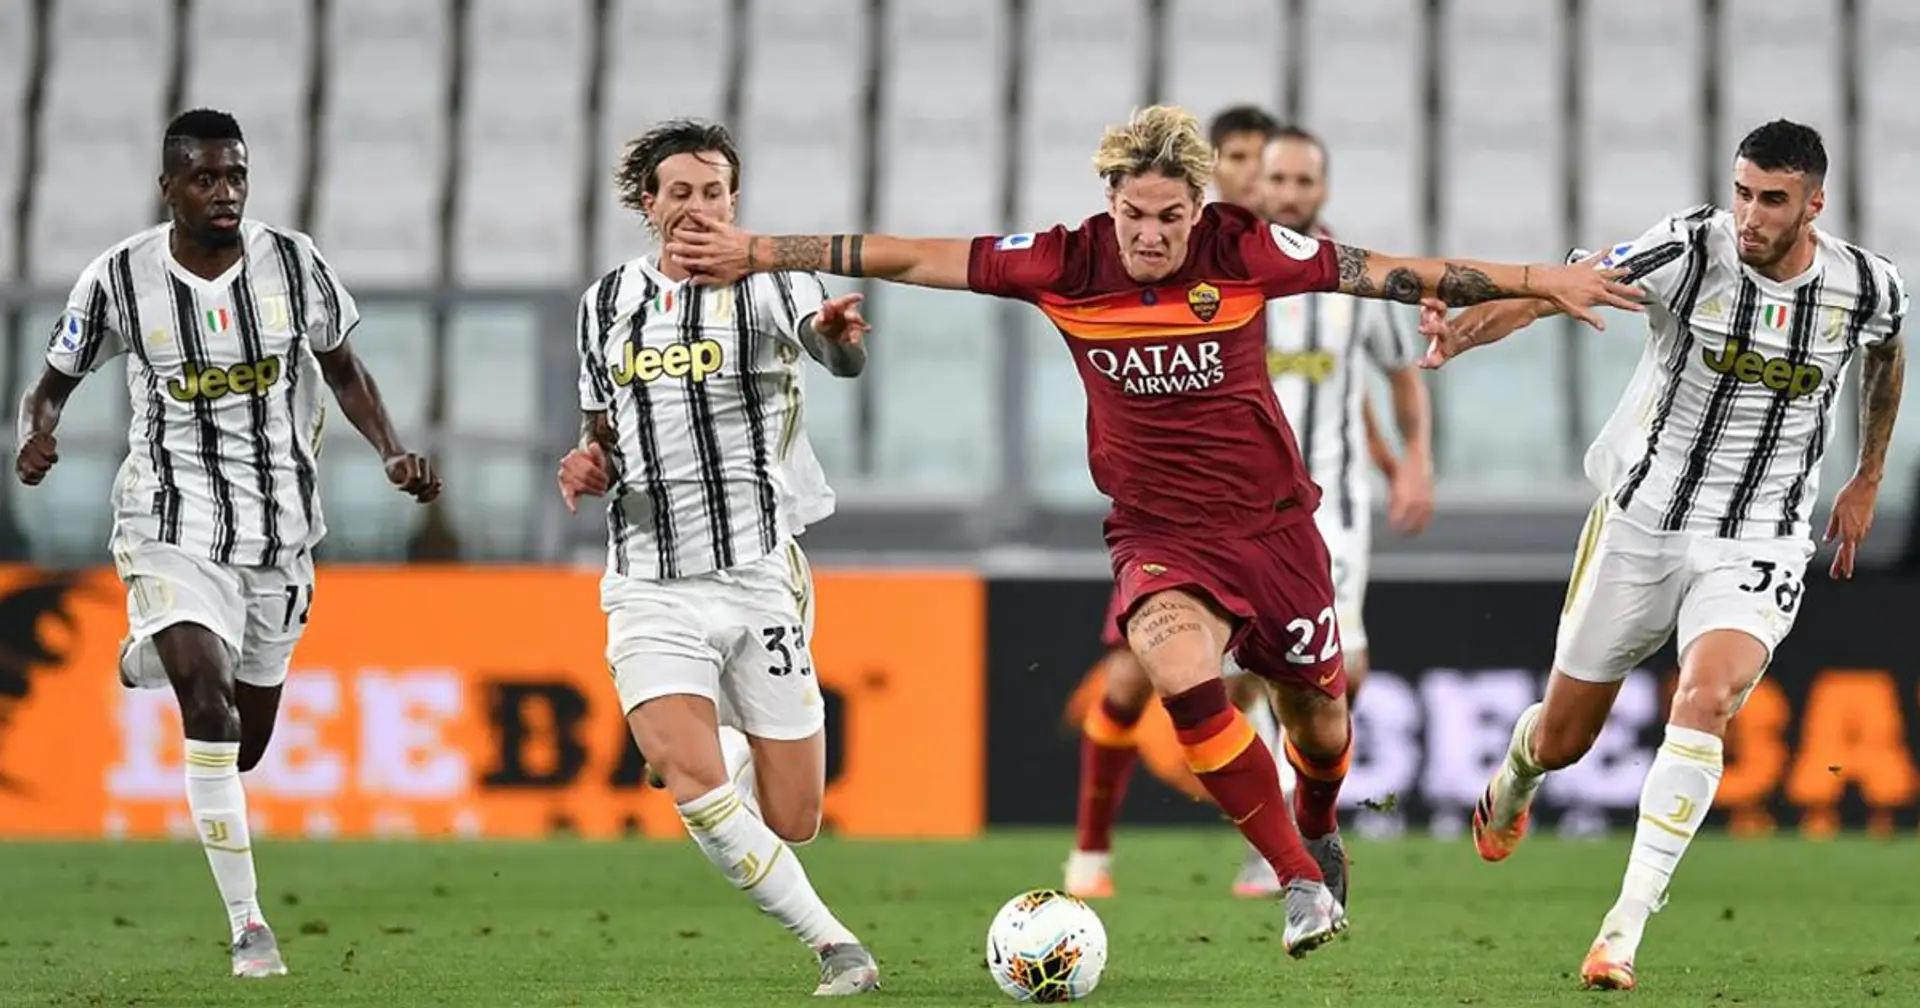 In vista di Roma-Juventus: le statistiche sorridono ai giallorossi, per Dzeko subito la chance di voltare pagina